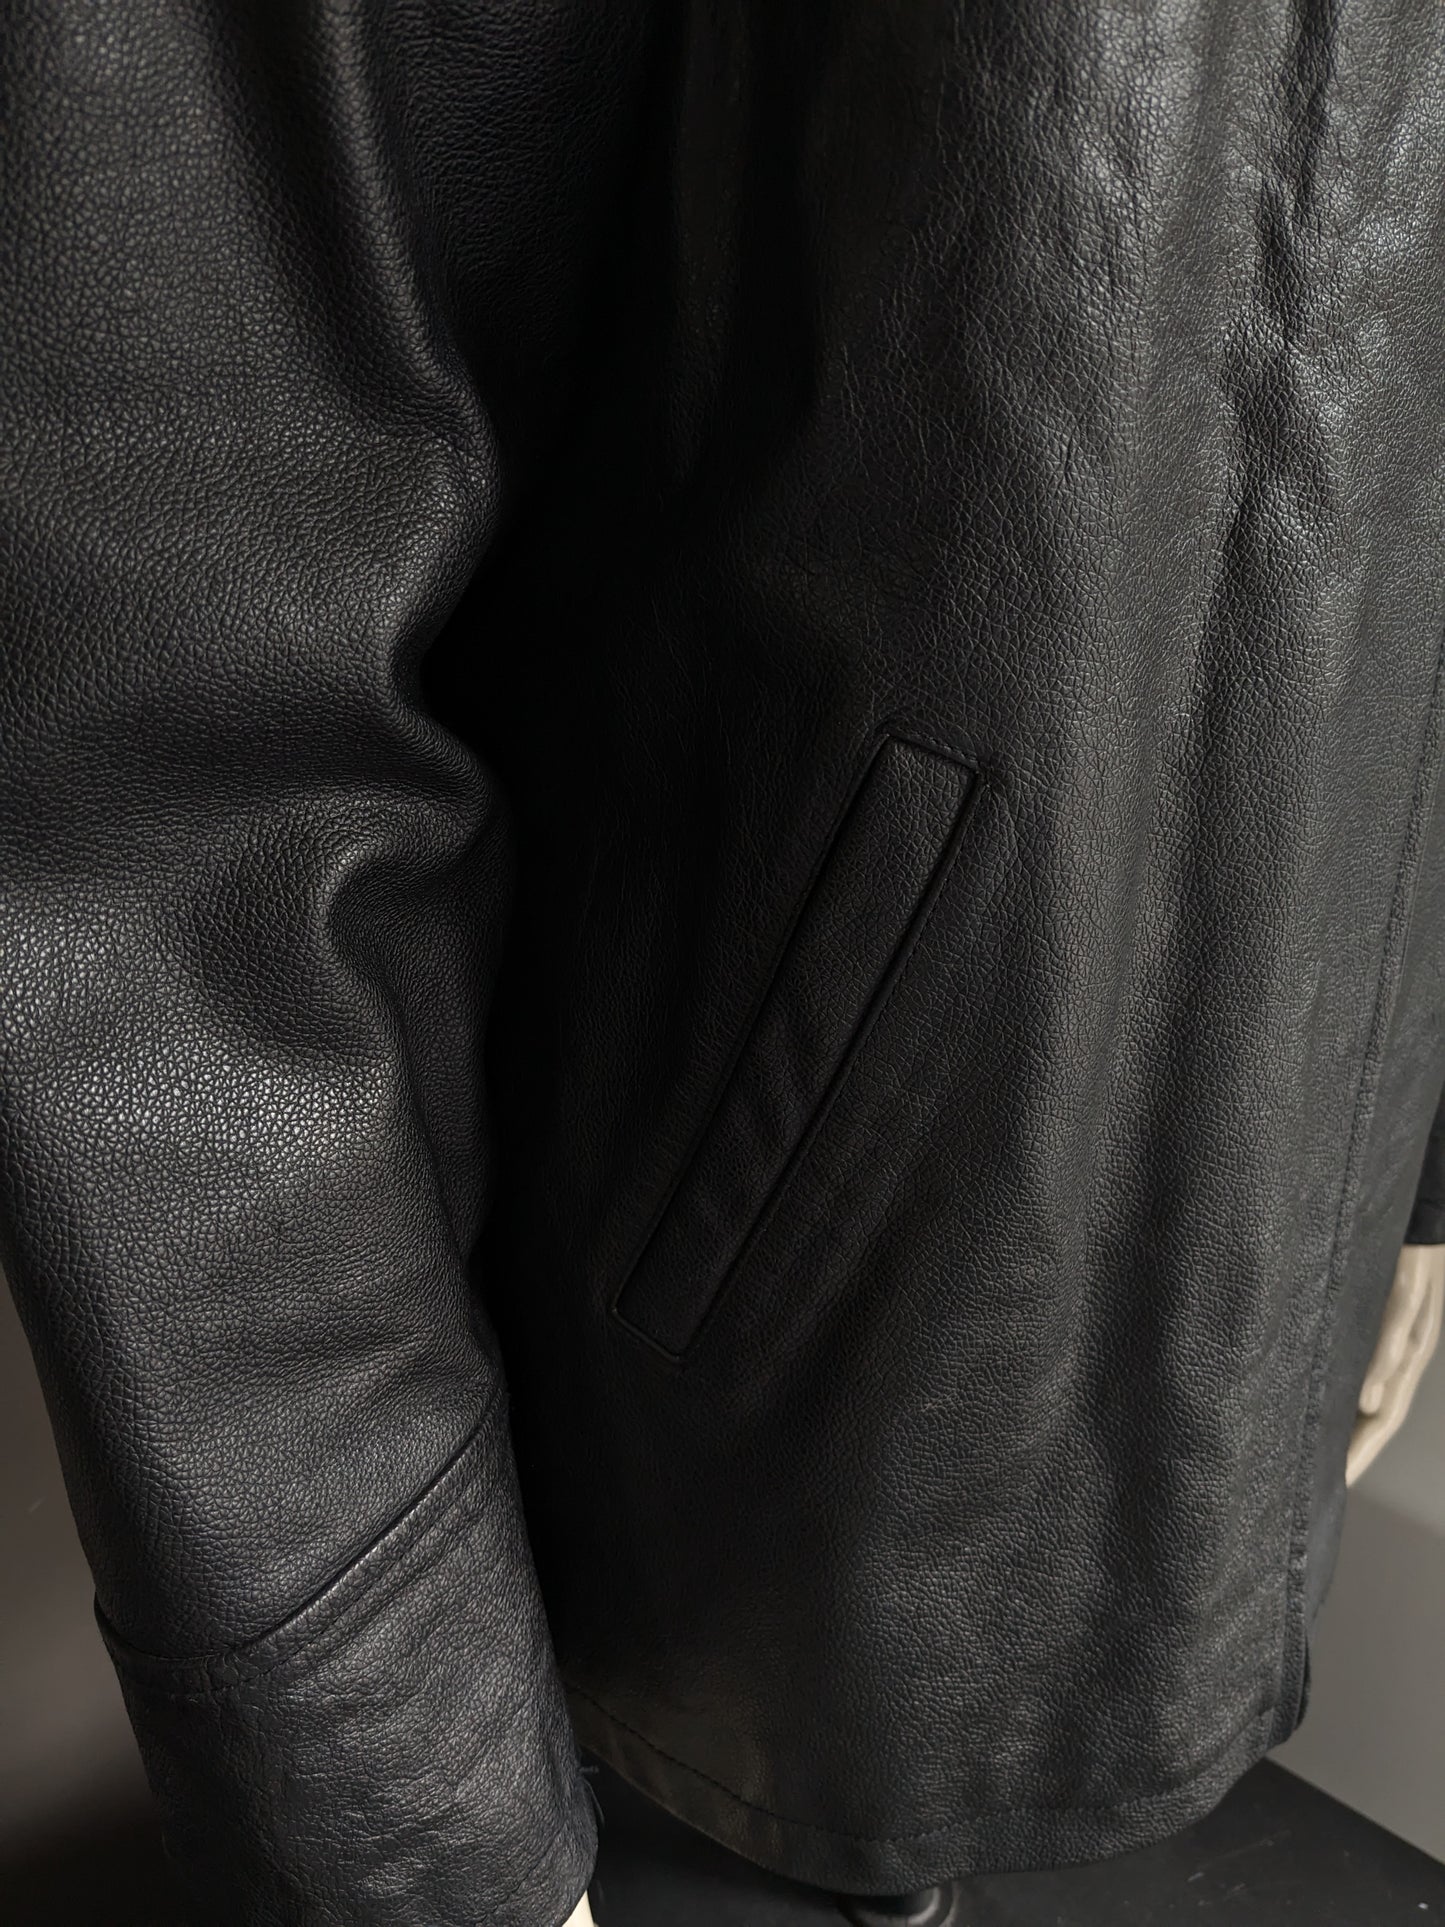 Revolución chaqueta / chaqueta de cuero. Color negro. Talla L.